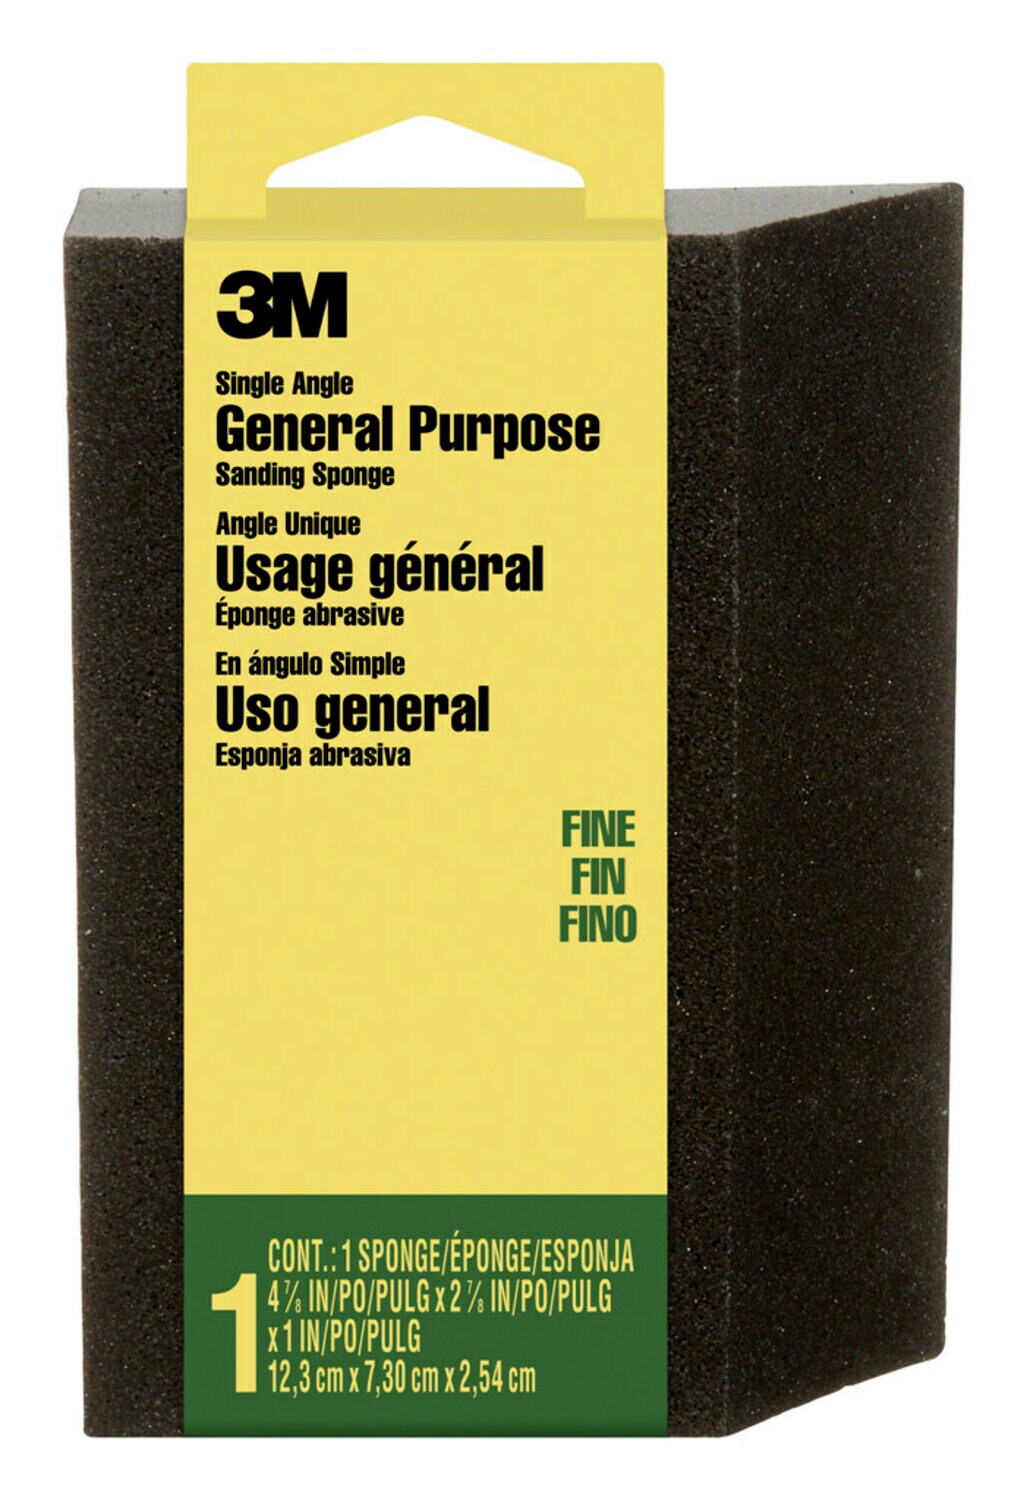 7100110752 - 3M General Purpose Sanding Sponge CP-040NA,Single Angle, 2 7/8 in x 4 7/8 in x 1 in, Fine, 1/pk, 24 pks/cs